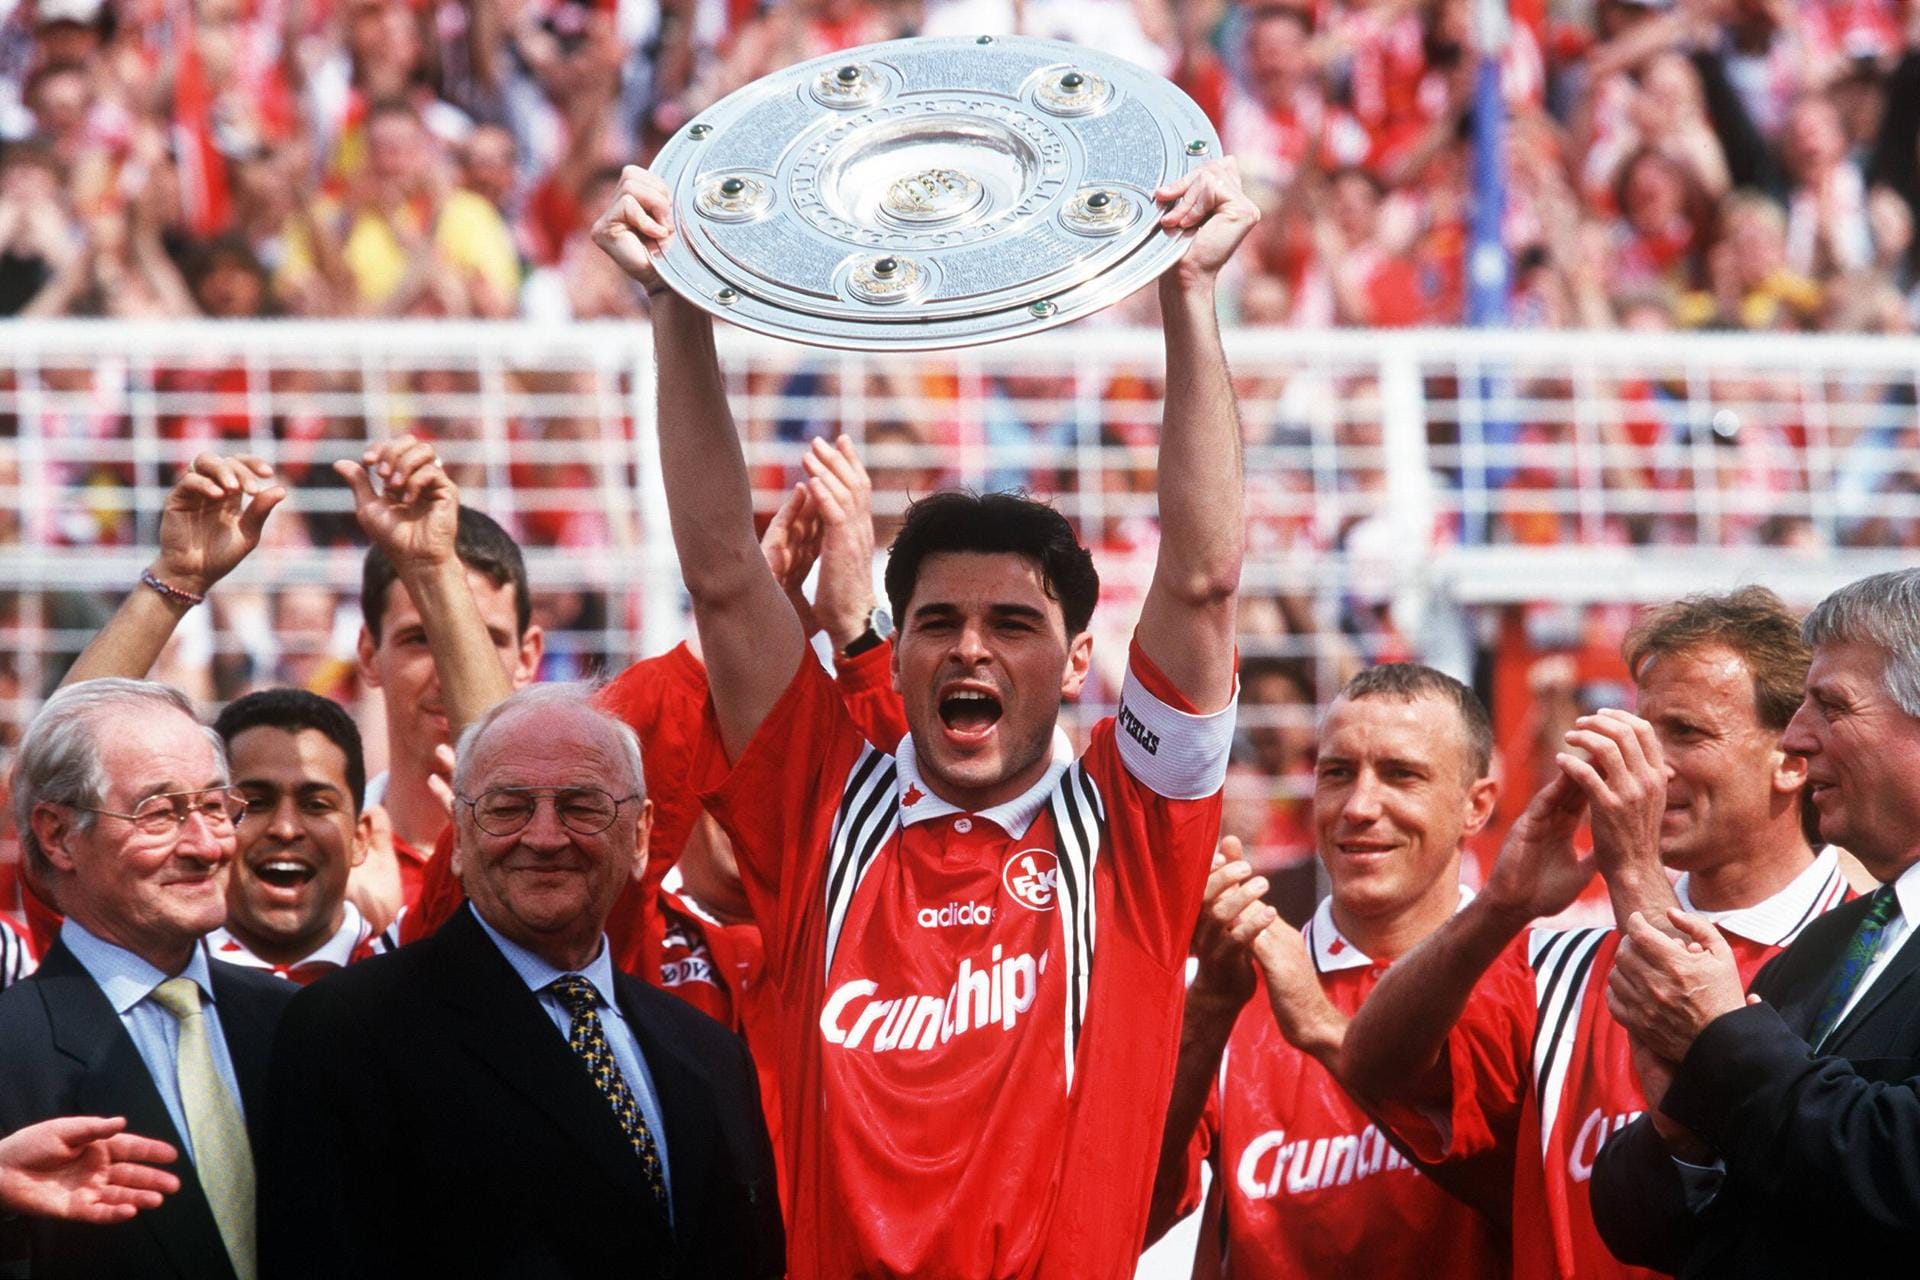 Ciriaco Sforza spielte erst beim 1. FC Kaiserslautern, dann beim FC Bayern. Nach einem Gastspiel bei Inter Mailand war er erneut in Lautern (1997-2000 und 2002-2006) und in München (2000-2002). Sensationell holte er mit dem FCK 1998 als Aufsteiger den Meistertitel.